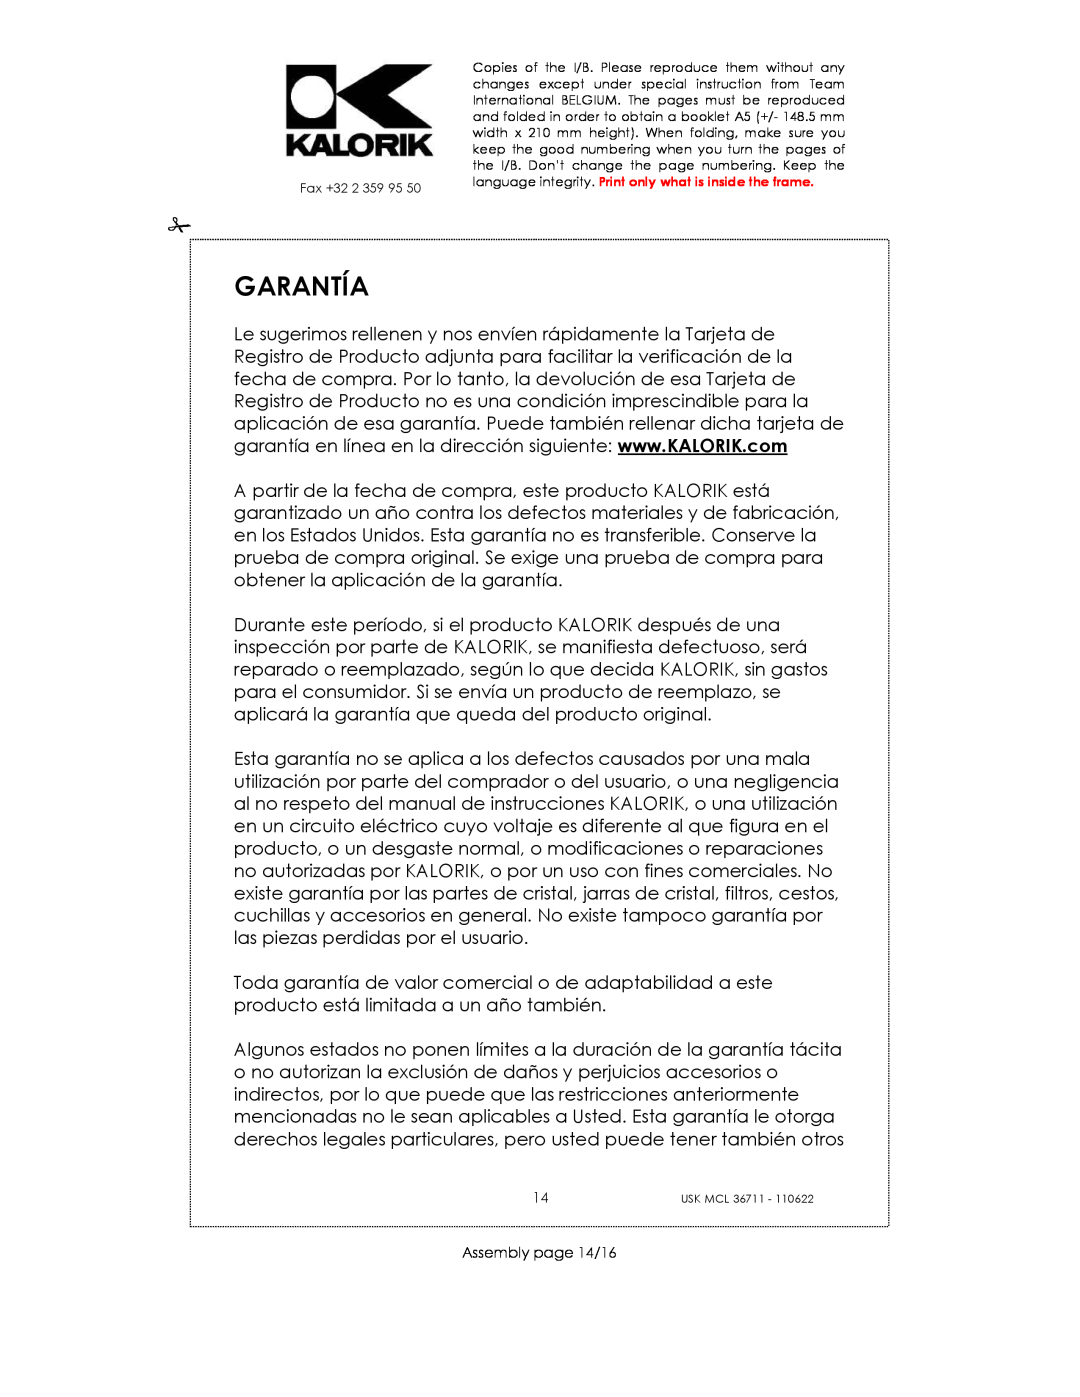 Kalorik USK MCL 36711 manual Garantía, Assembly page 14/16 